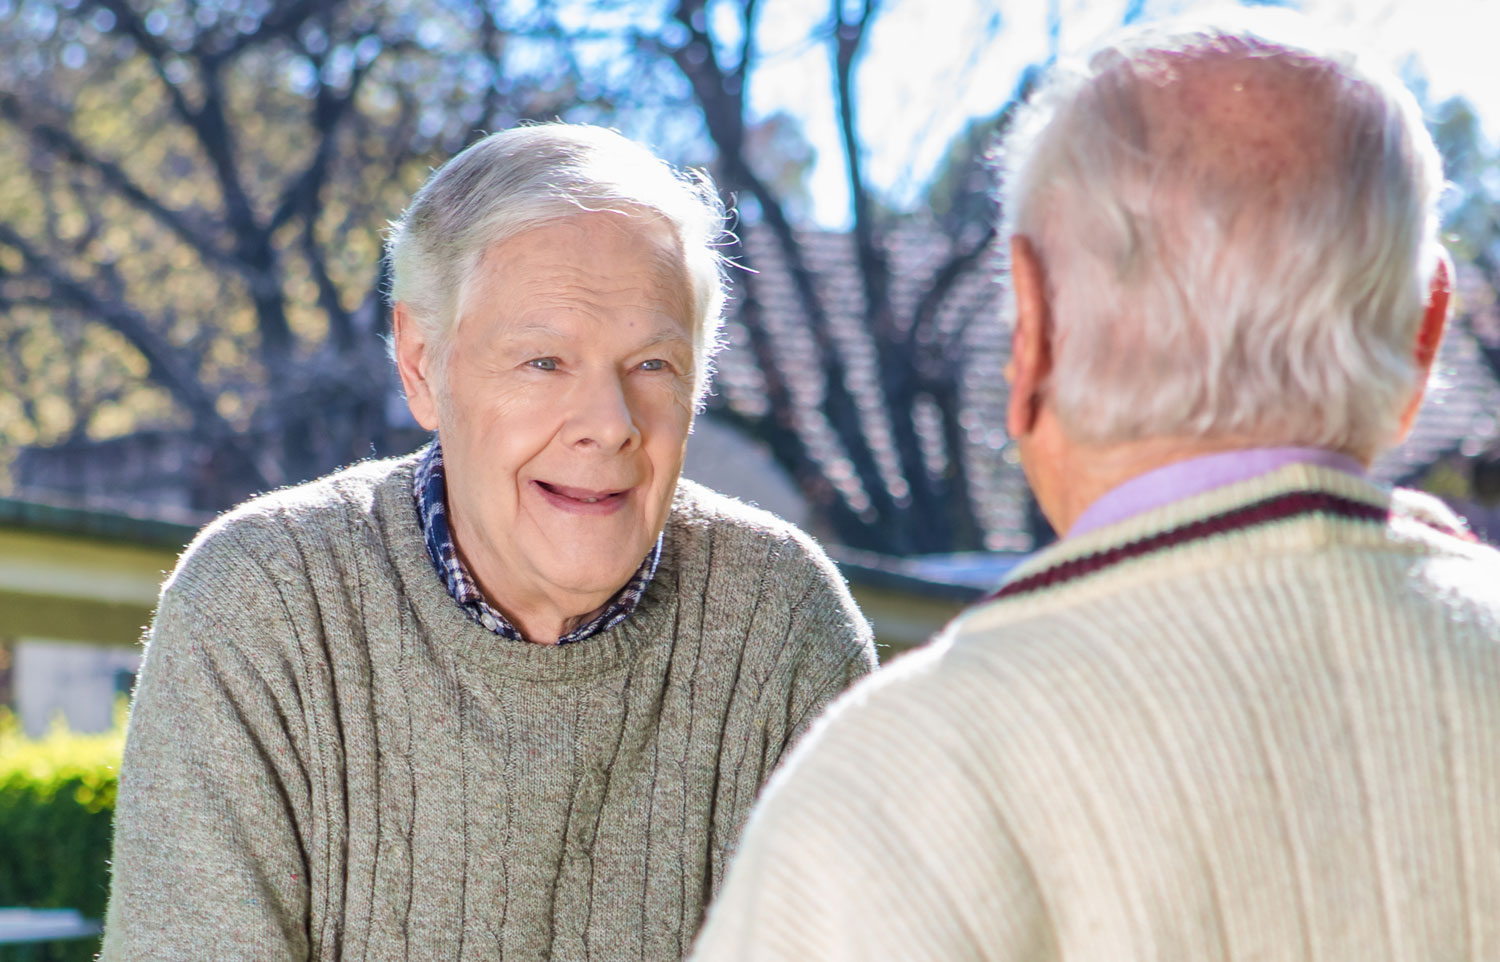 Elderly men in Australian aged care